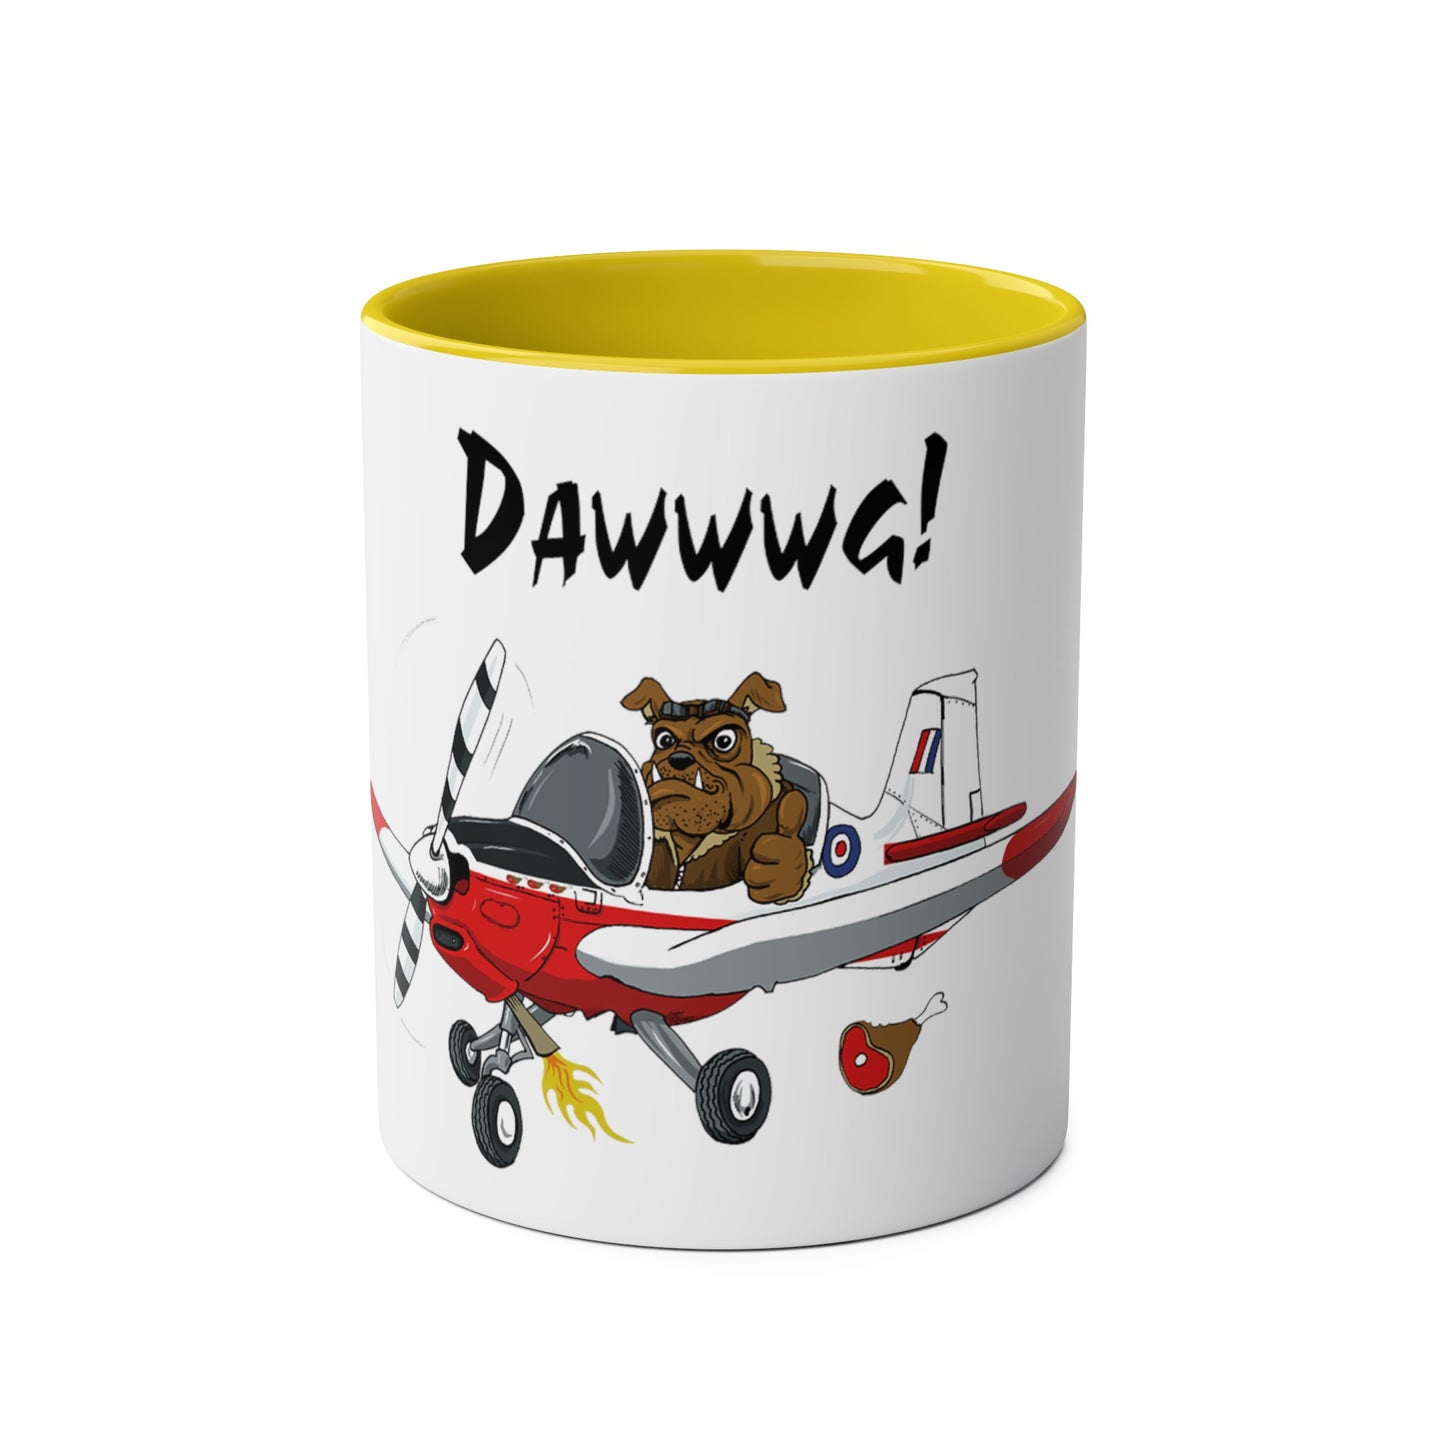 Bulldog Aerobatic Trainer Two-Tone Coffee Mugs, 11oz